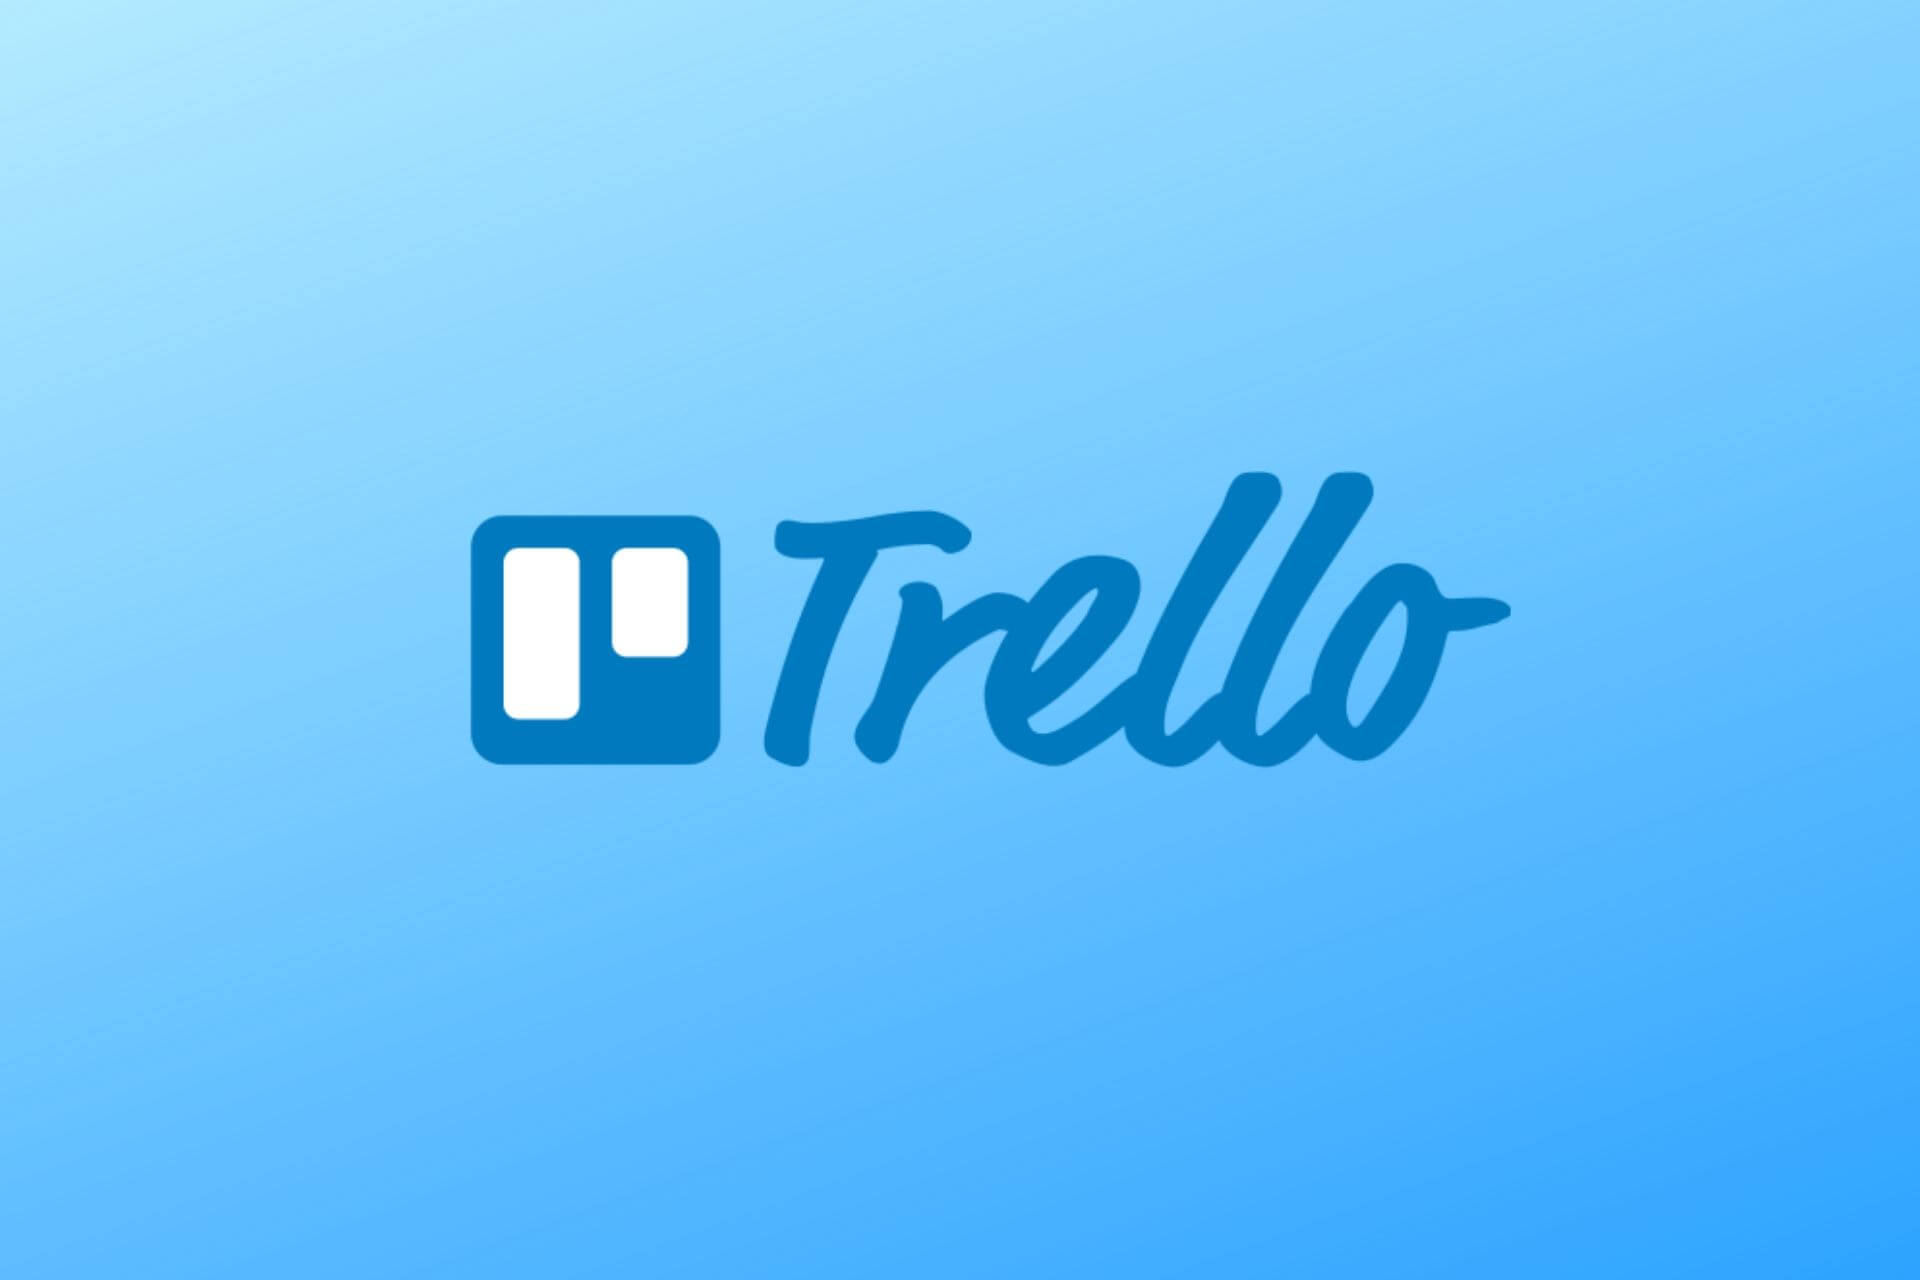 trello free download for windows 10